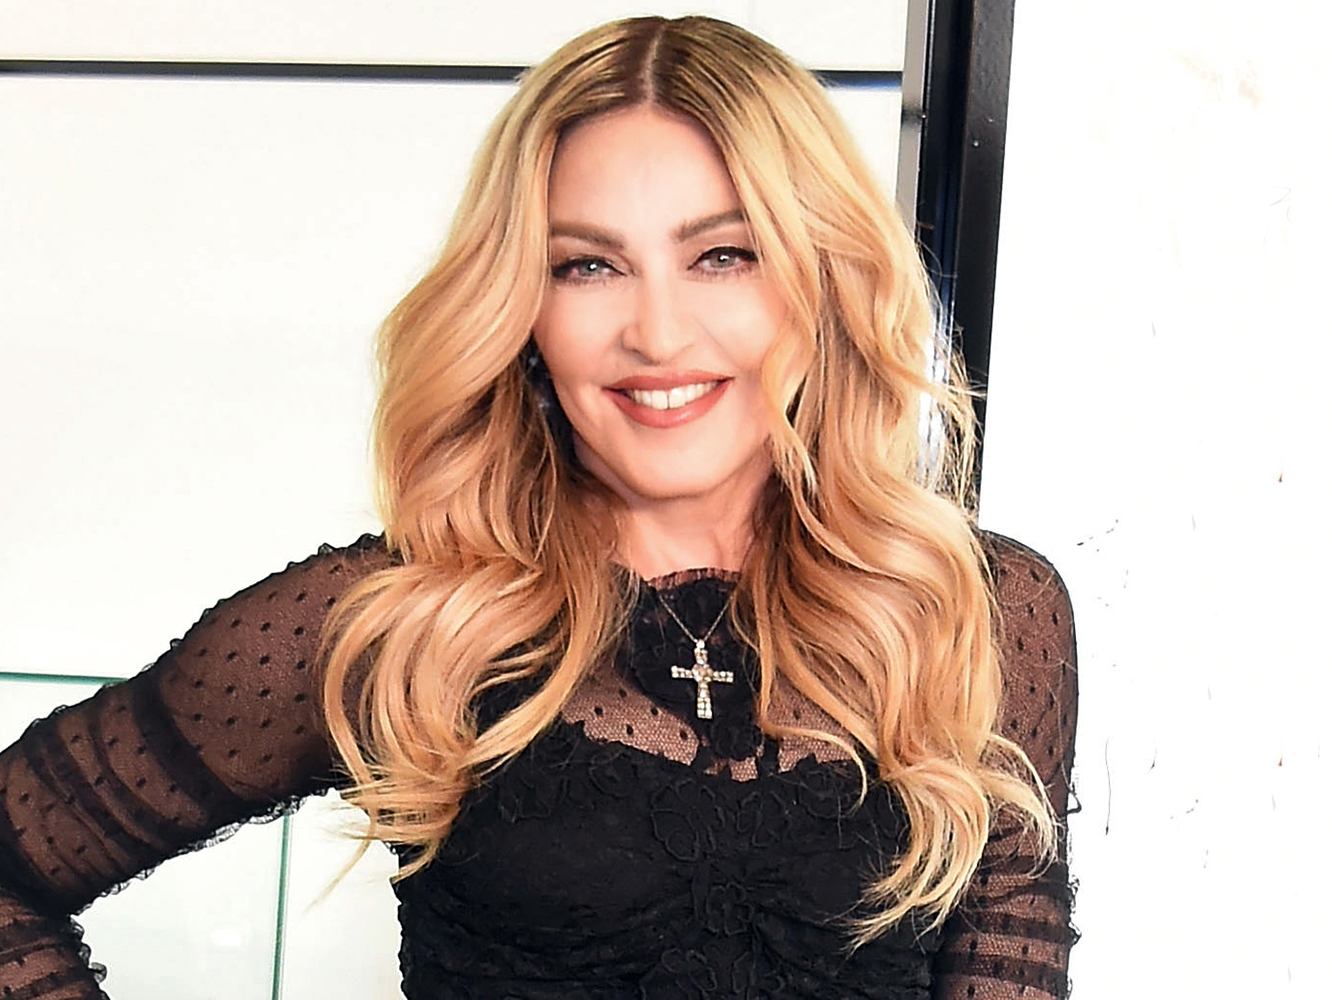  Un periodista se ha animado a preguntar a Madonna por un flop, y sigue con vida